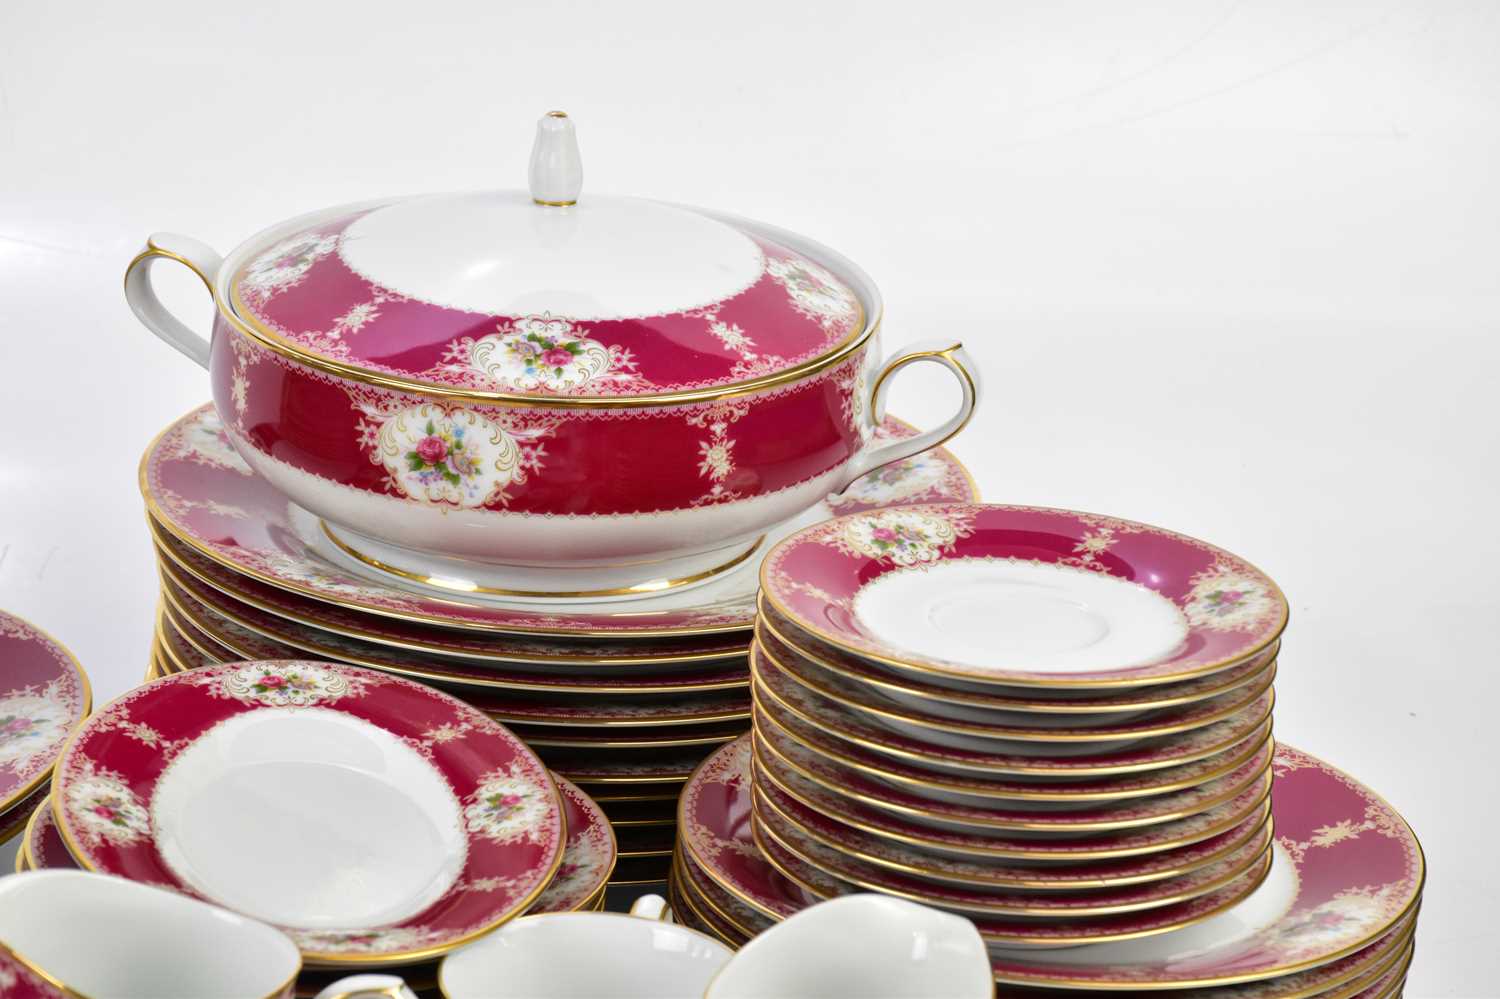 NORITAKE; a 2652 pattern part tea/dinner service comprising ten bowls, ten saucers, ten side plates, - Bild 3 aus 4